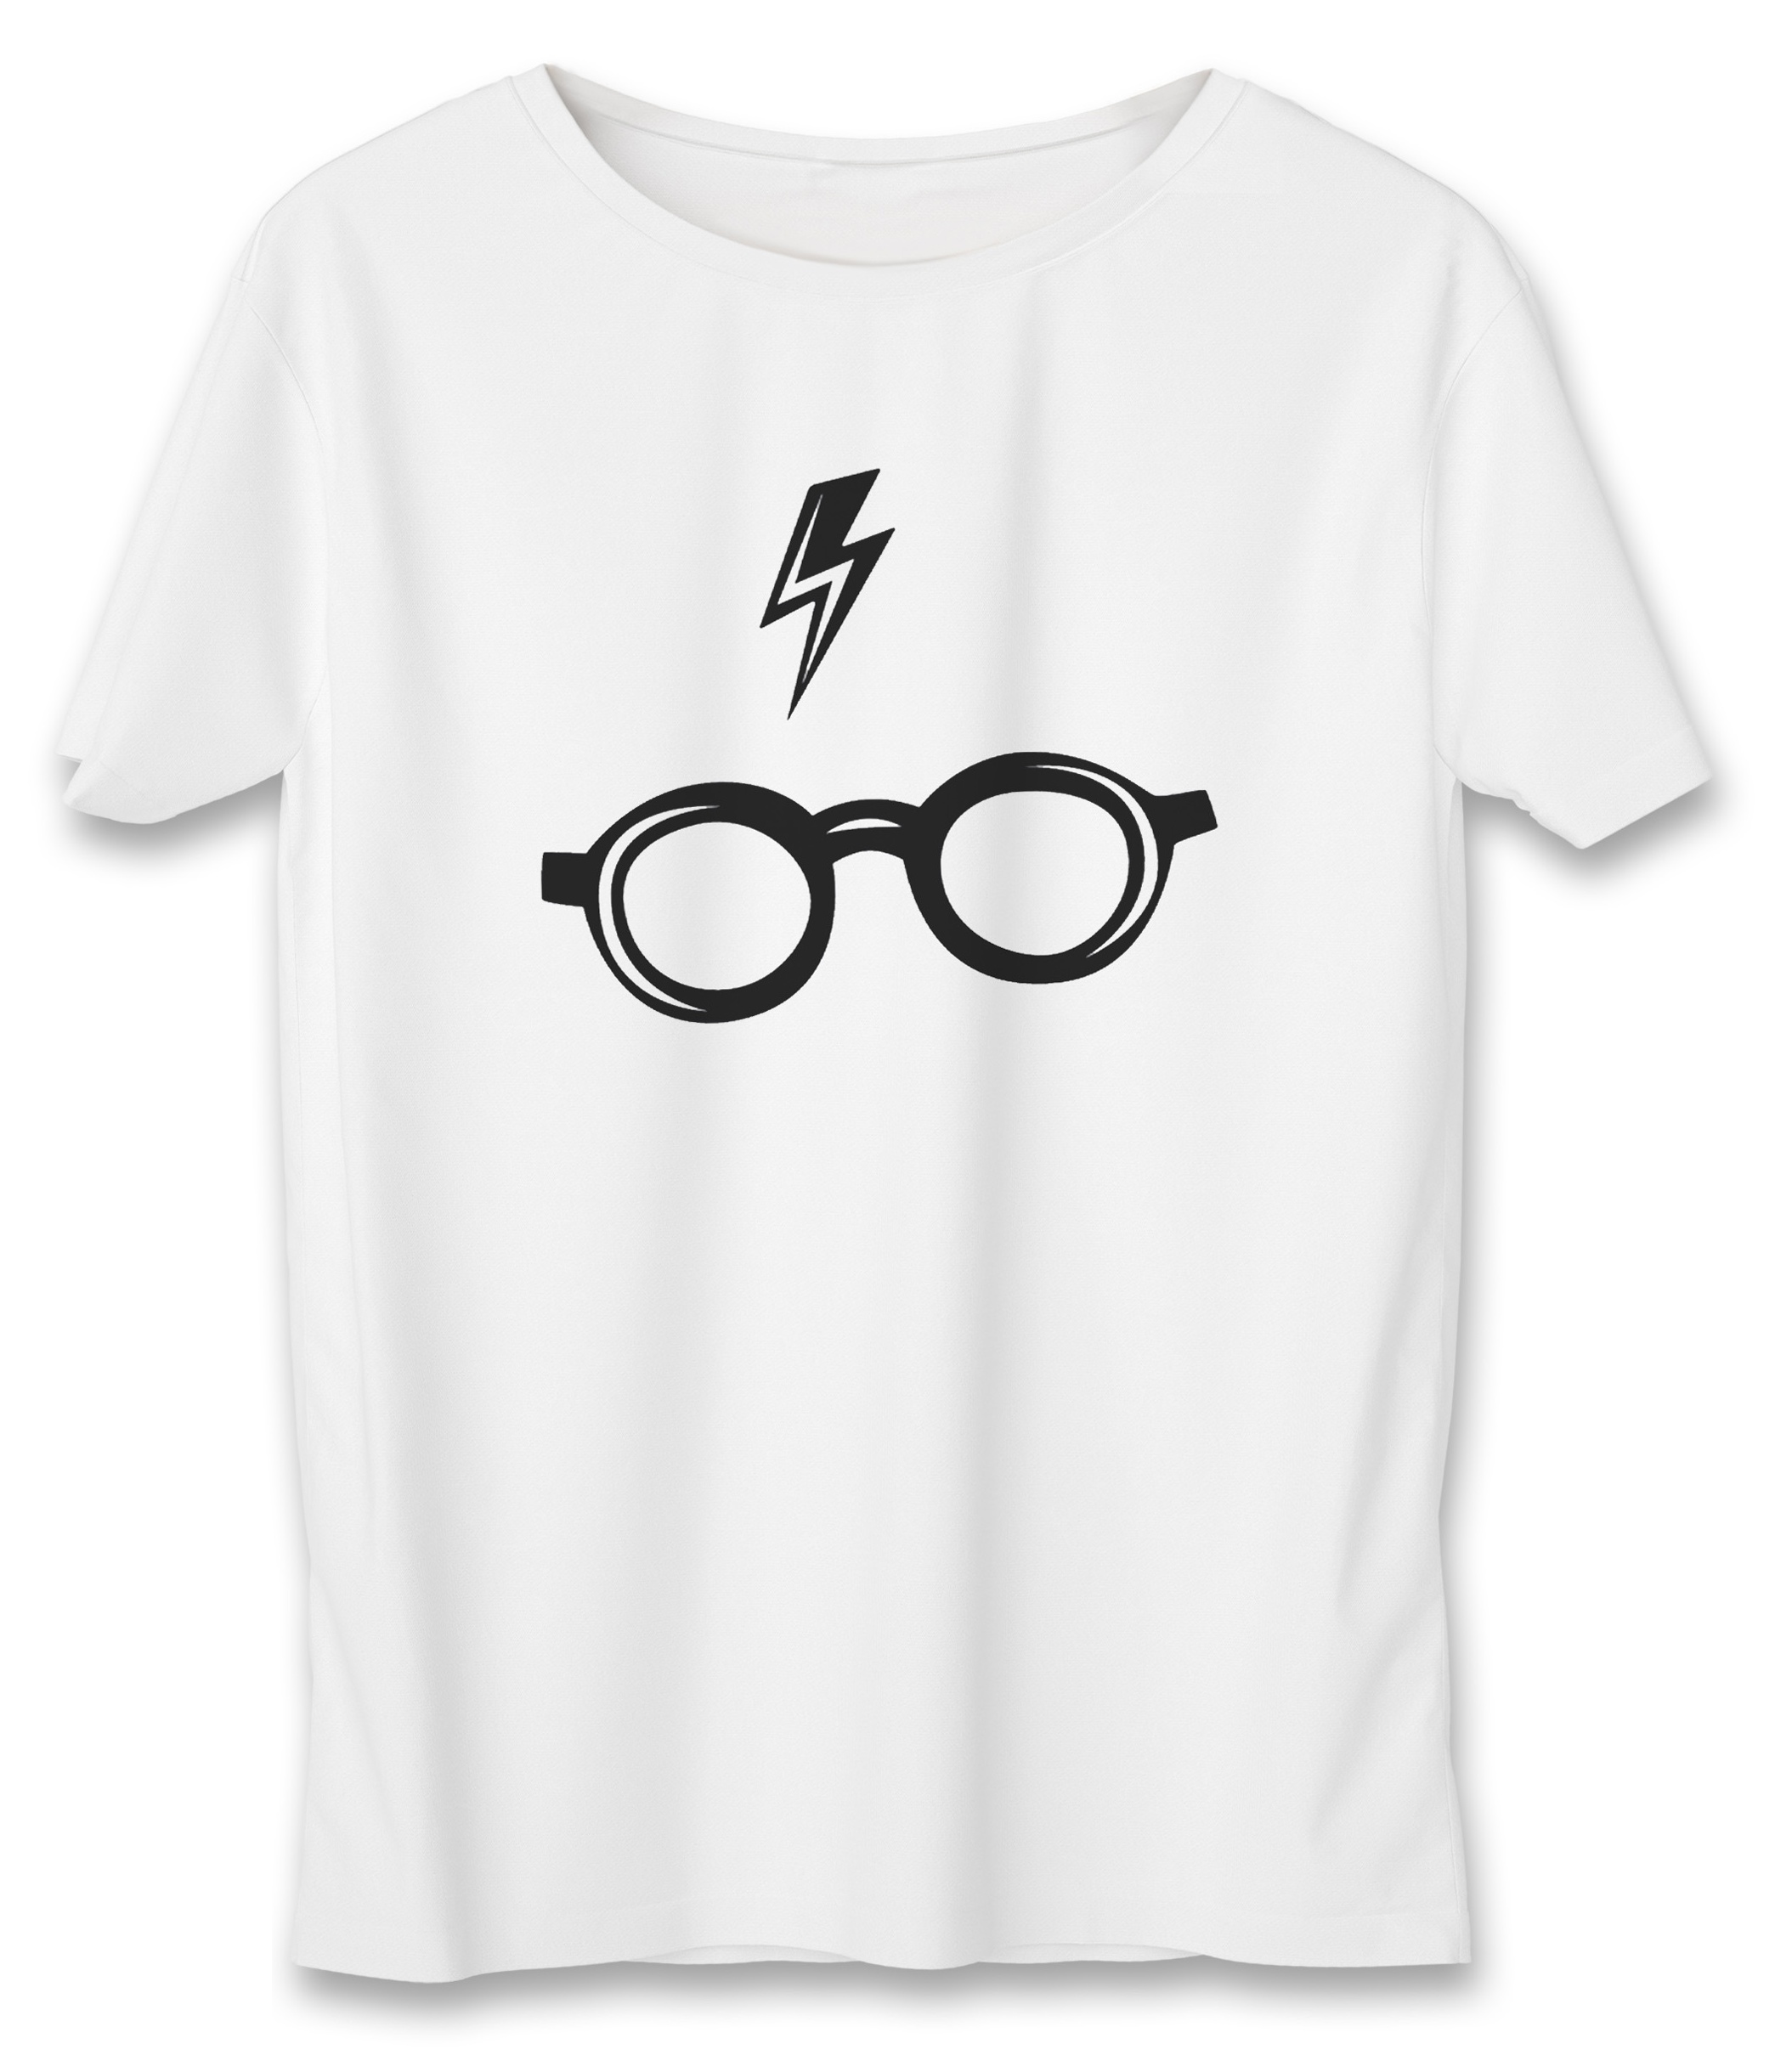 تی شرت زنانه به رسم طرح هری پاتر کد 5511